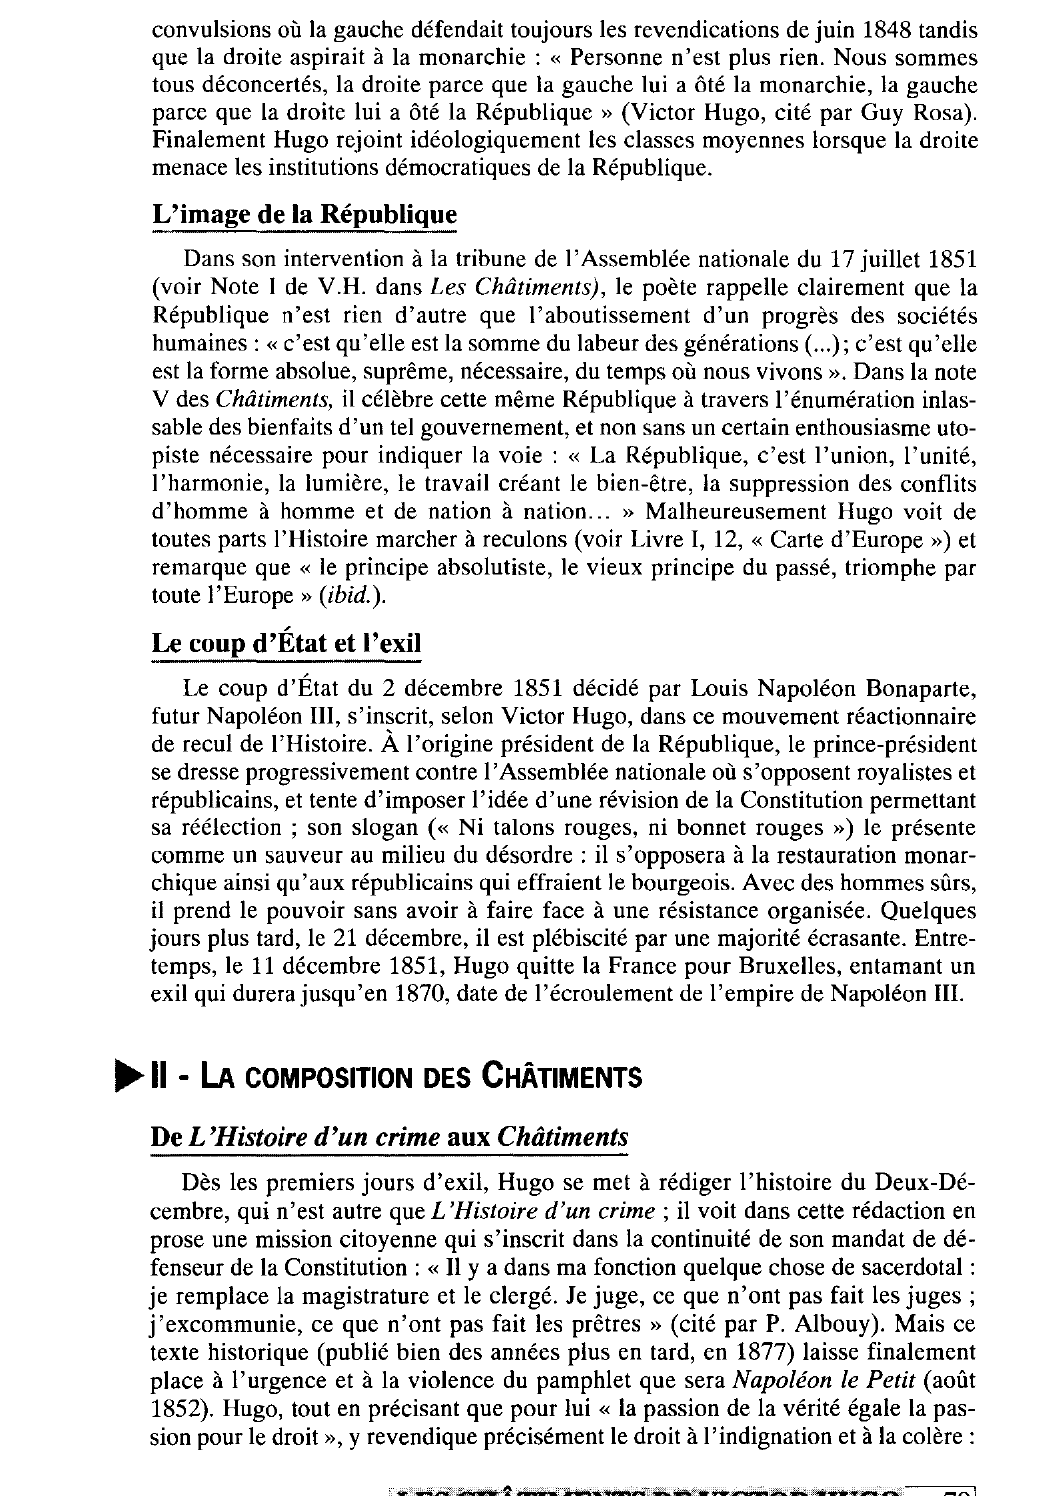 Prévisualisation du document Présentation générale des Châtiments de Victor Hugo